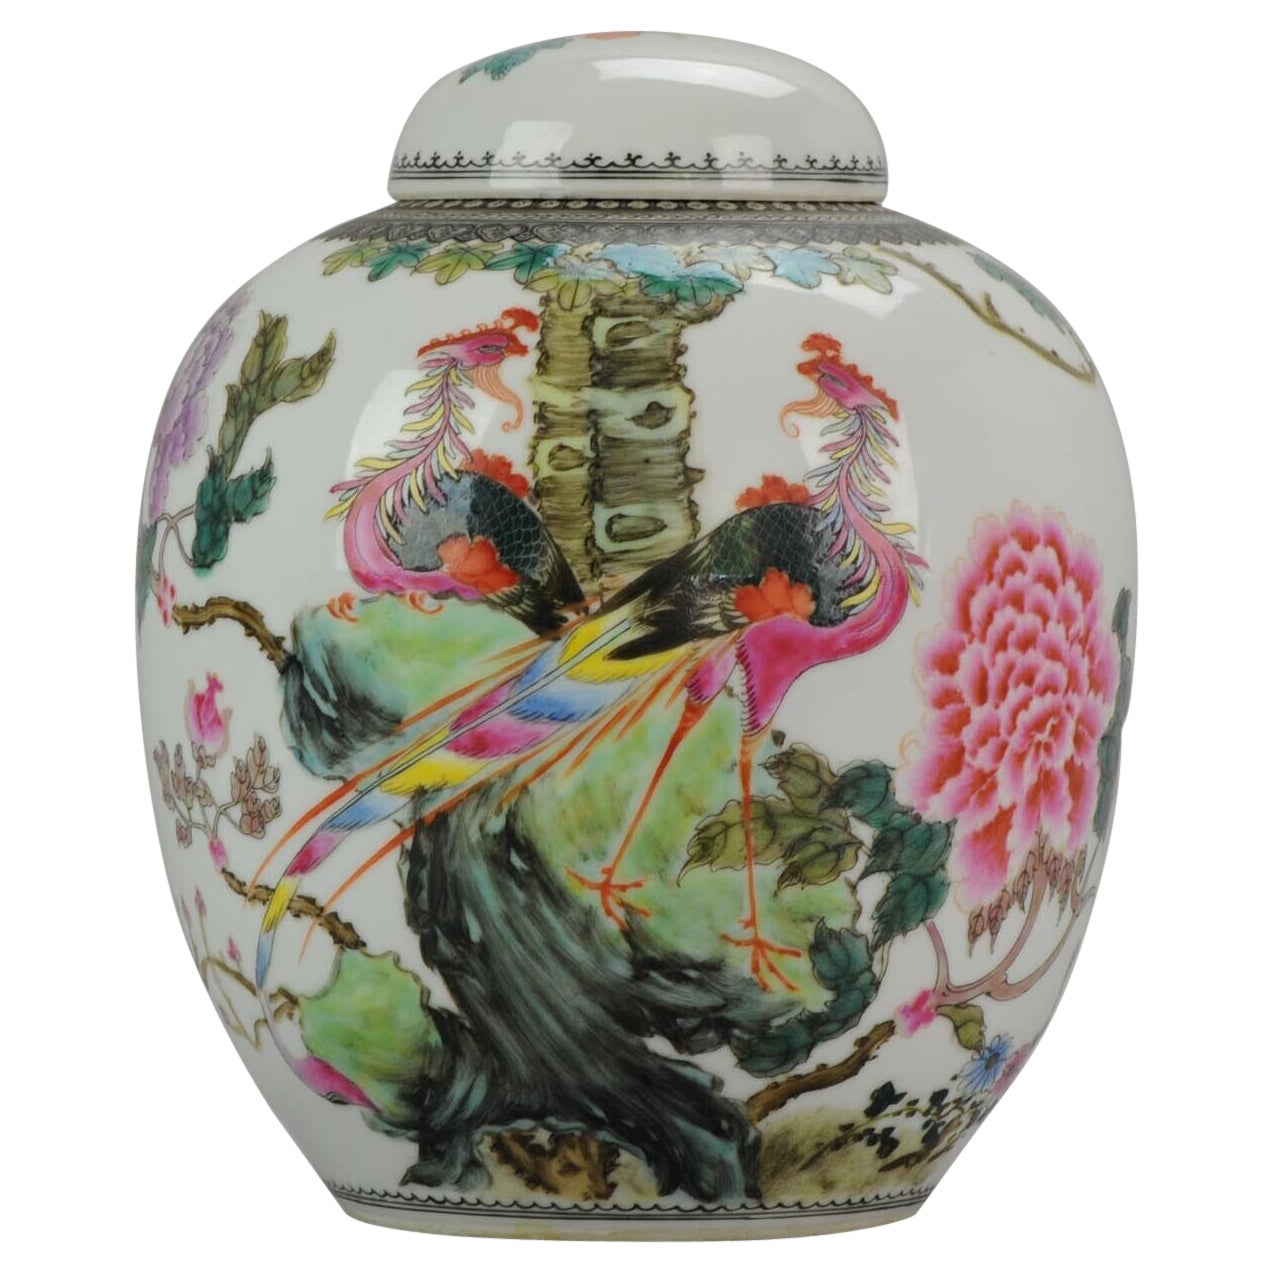 Pot vase ProC marqué avec calligraphie Fenghuang, années 1960-70 